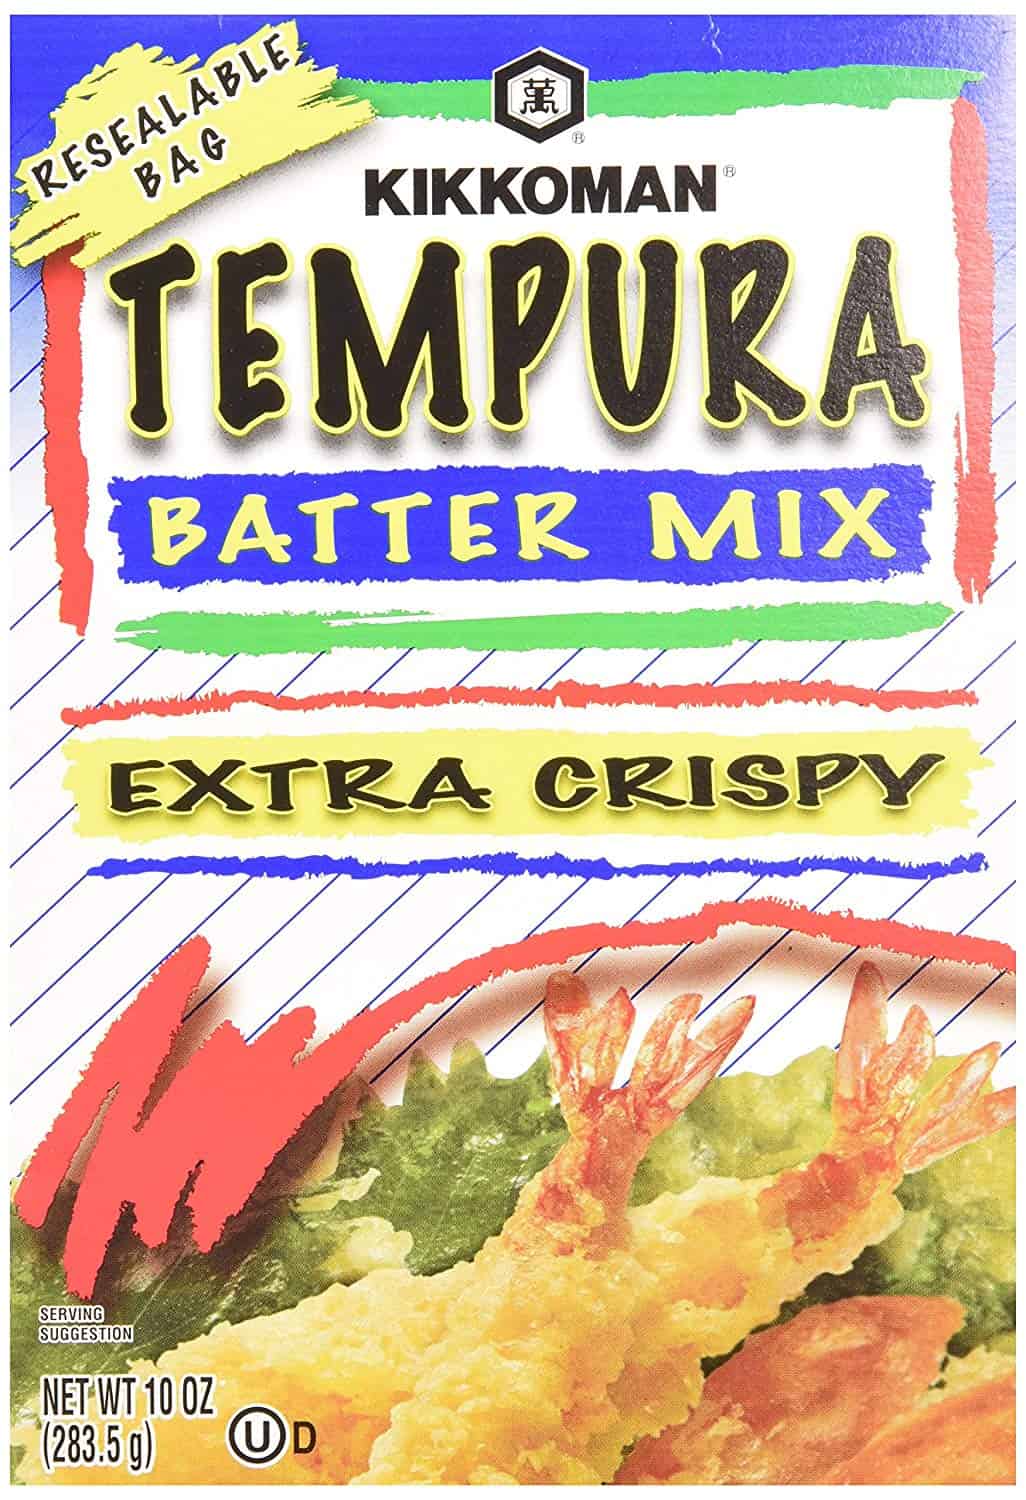 Kikkoman-tempura batmiksaĵo